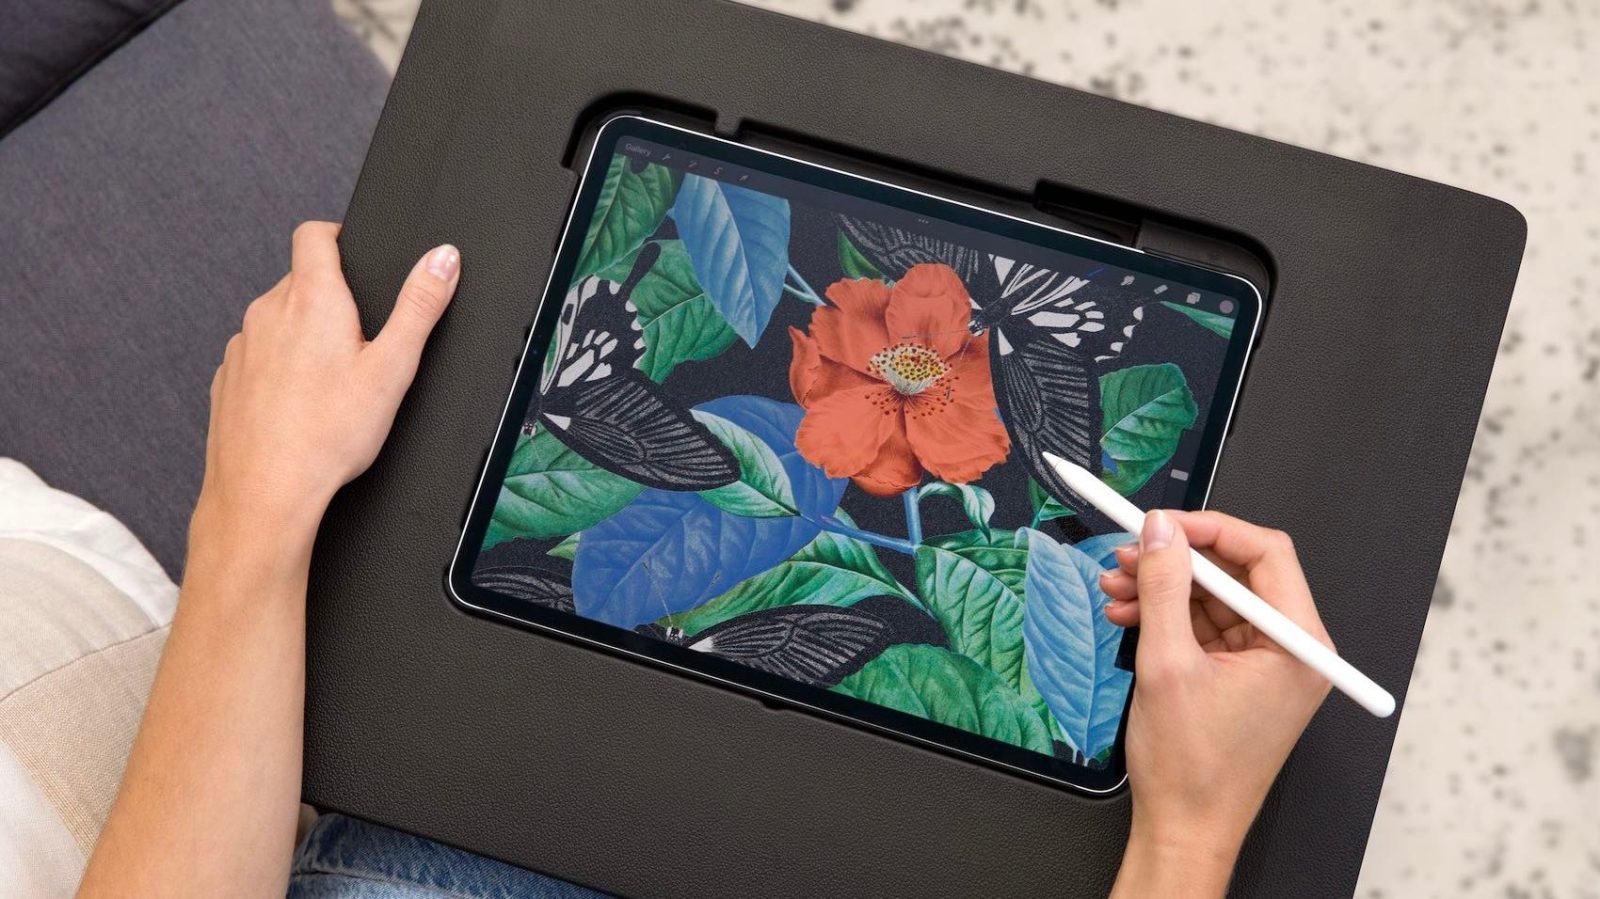 Astropad Darkboard iPad drawing surface